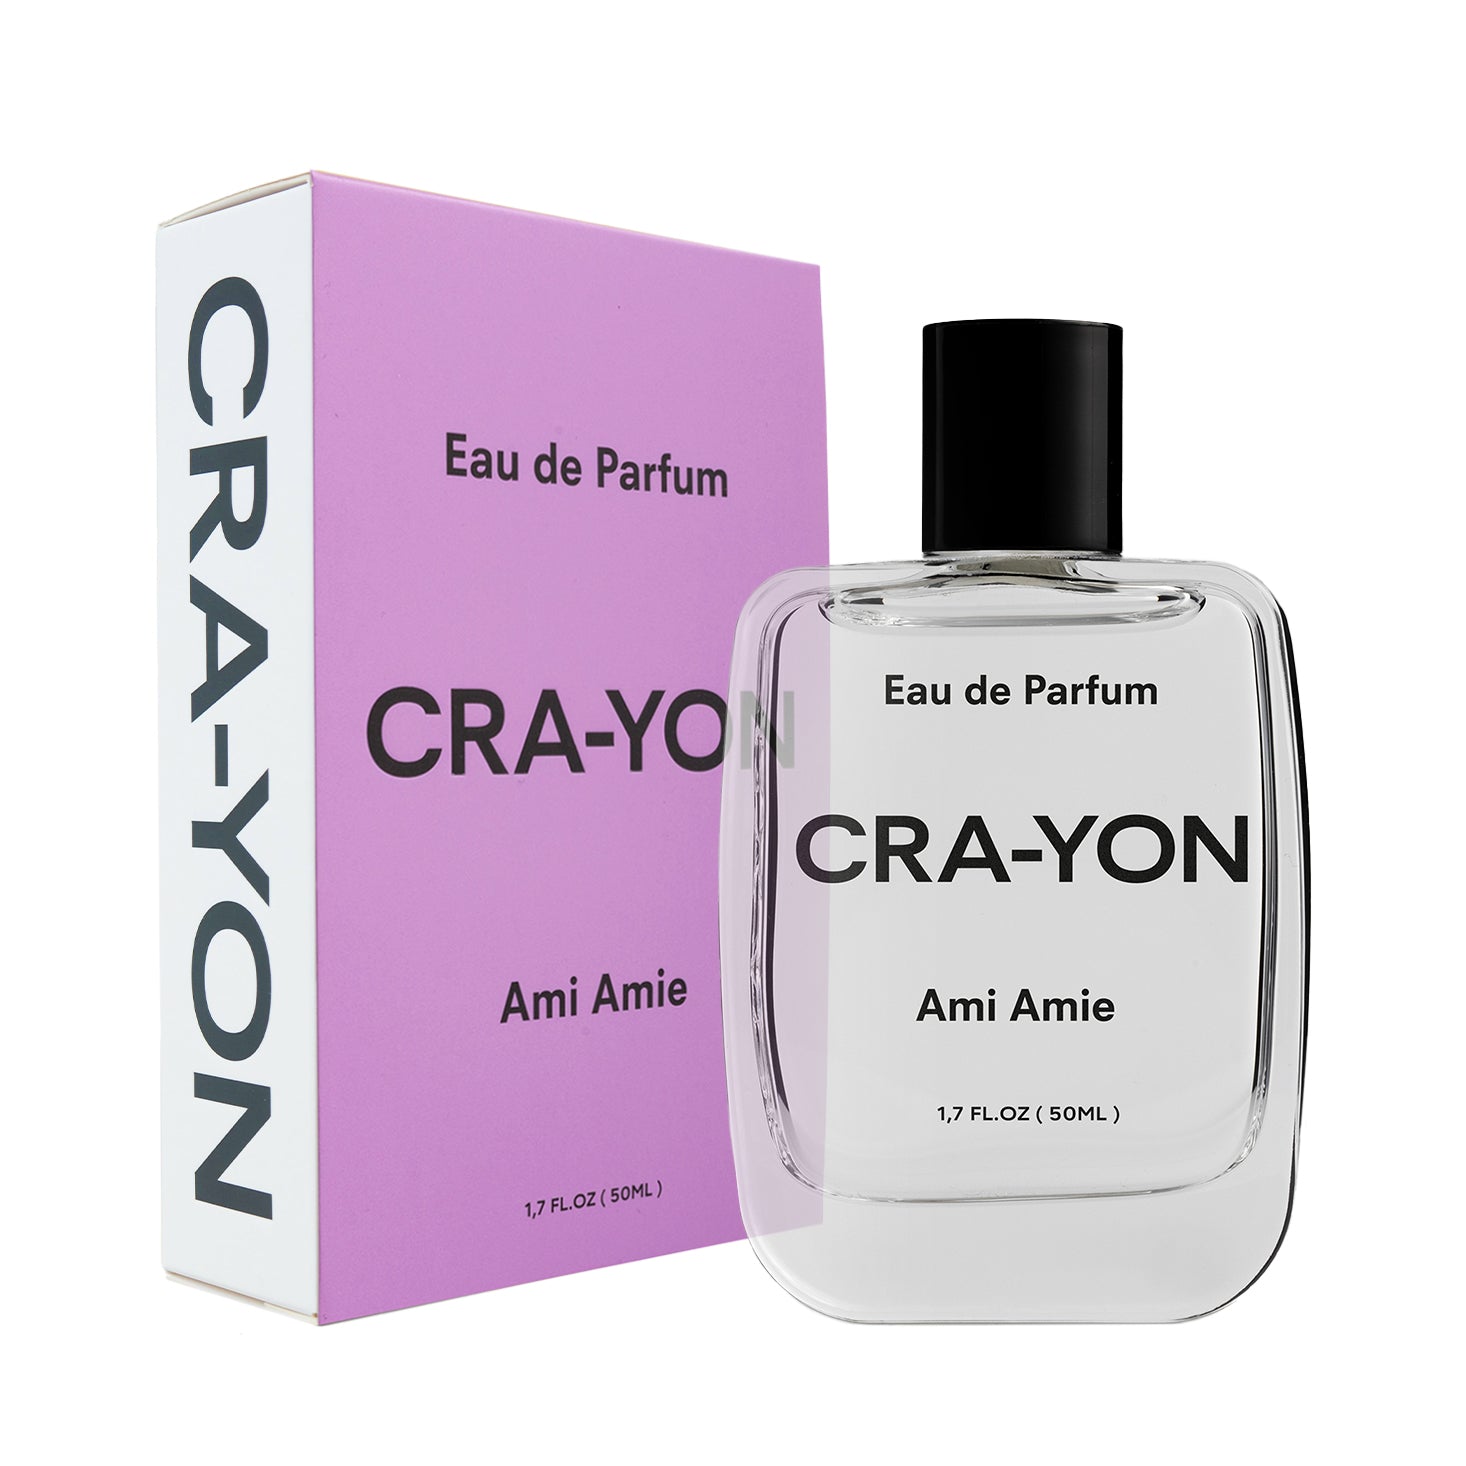 CRA-YON Ami Amie Eau de Parfum - 50ml: Official Stockist